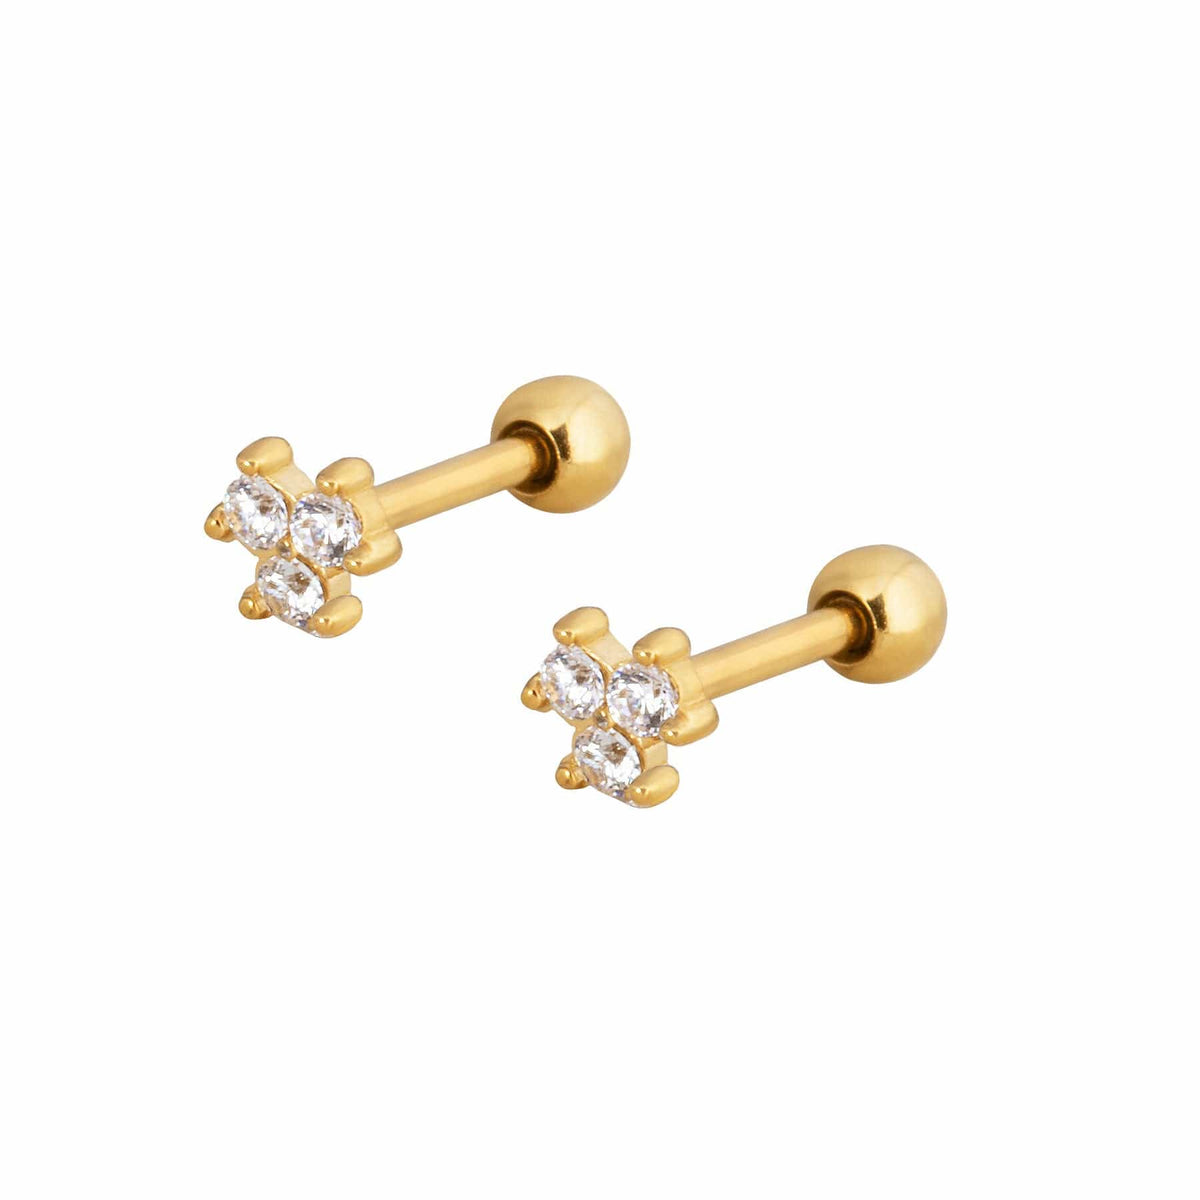 BohoMoon Stainless Steel Callie Stud Earrings Gold